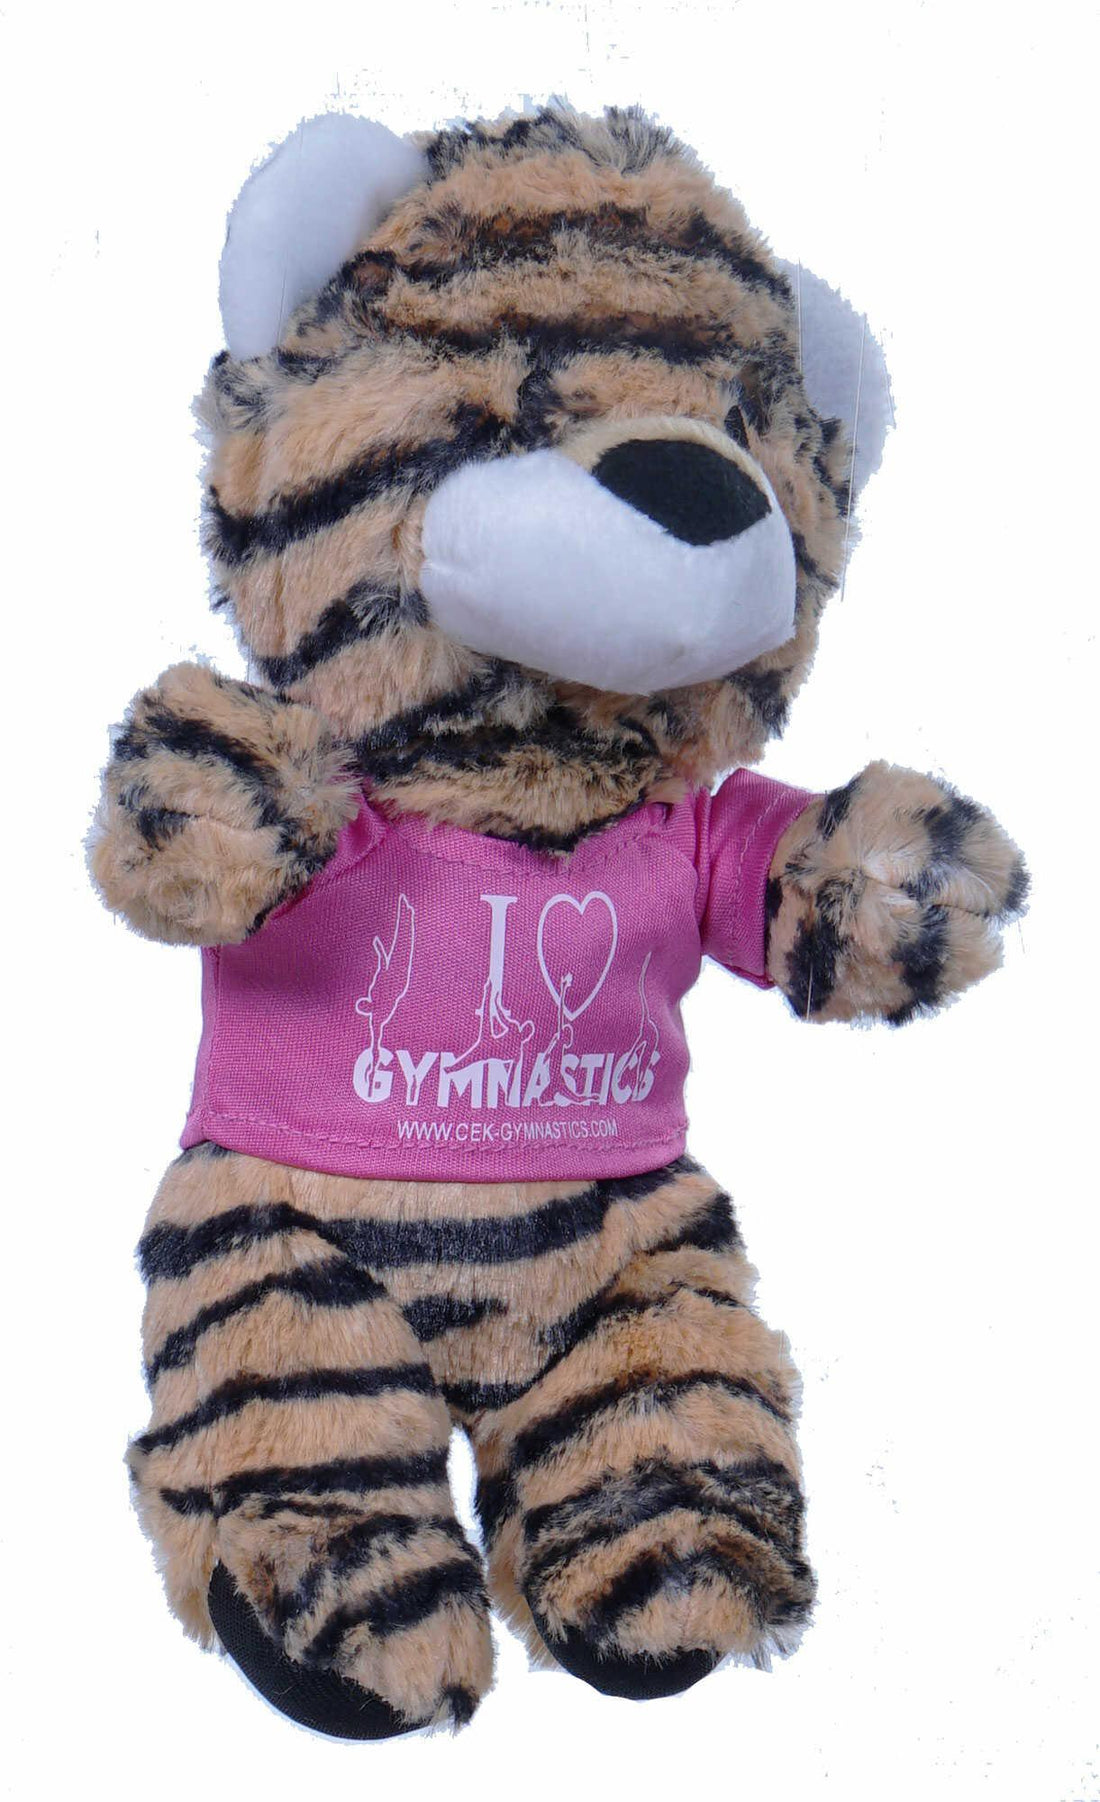 Tiger-Kuscheltier mit Promo-T-Shirt